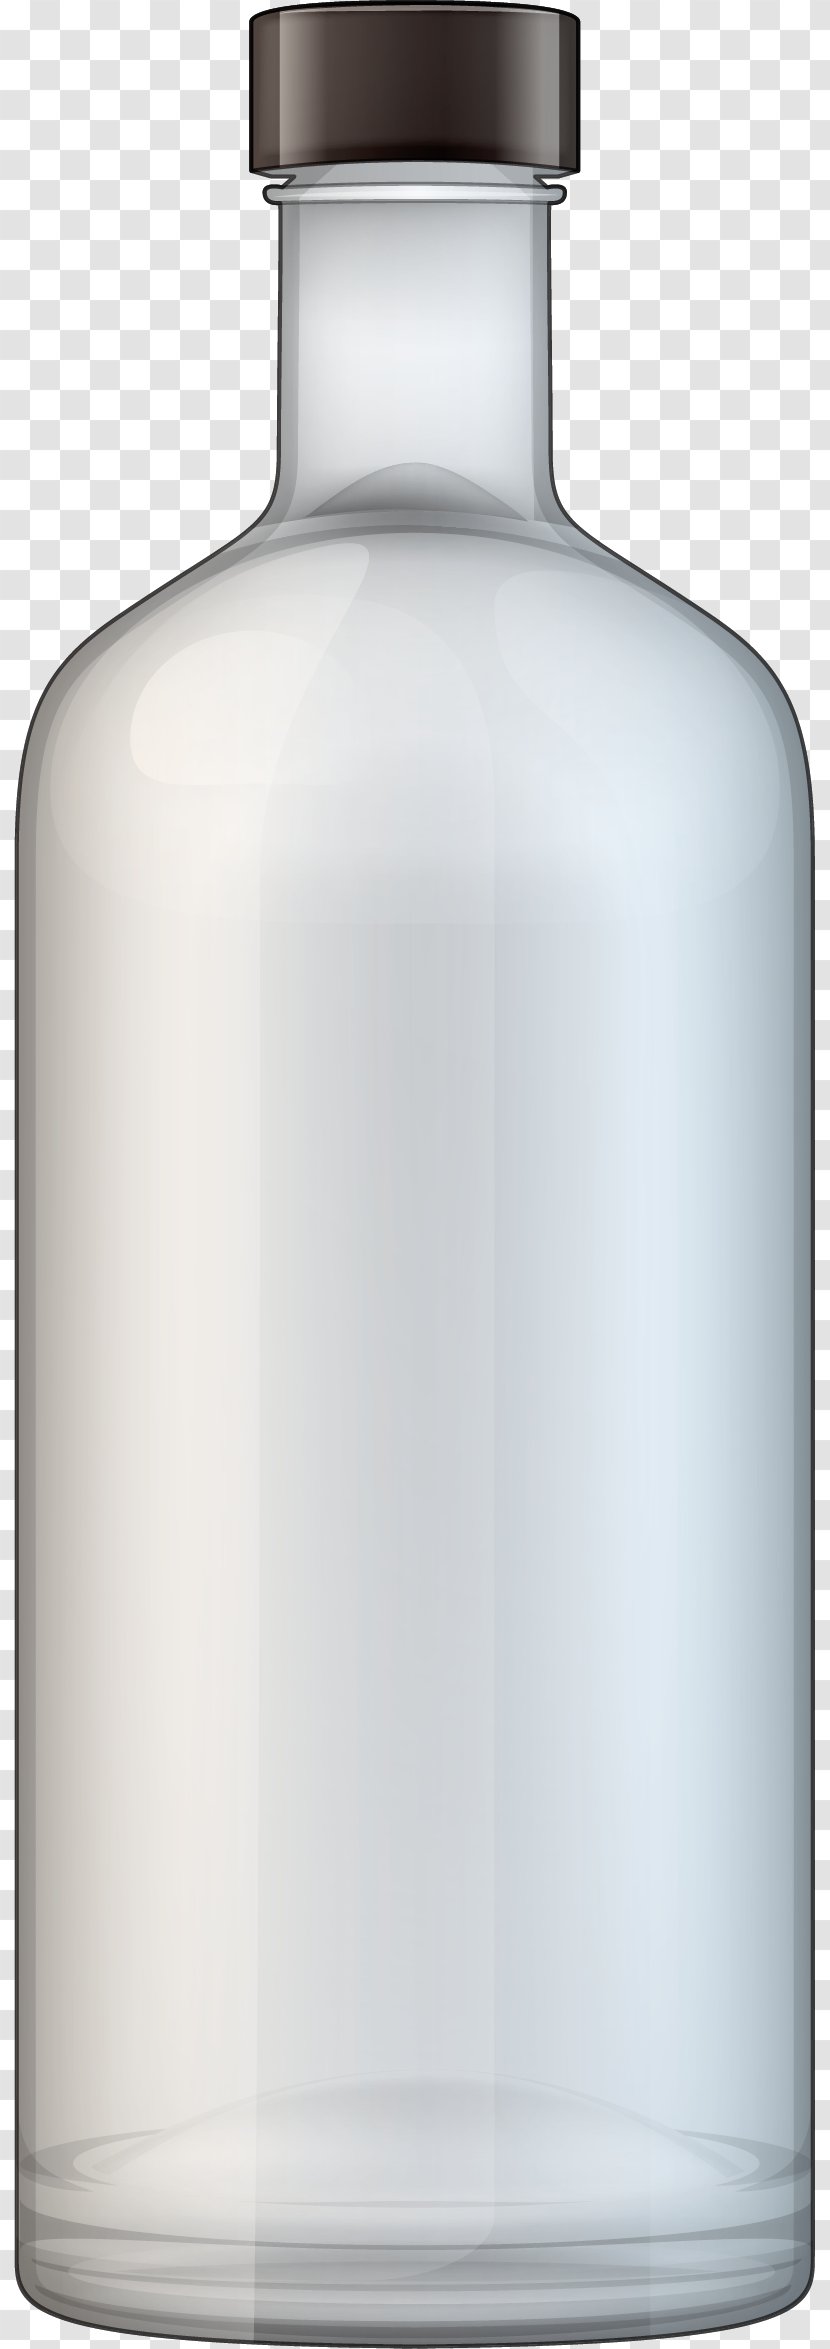 Vodka Distilled Beverage Bottle Clip Art - Flask - White Transparent Transparent PNG